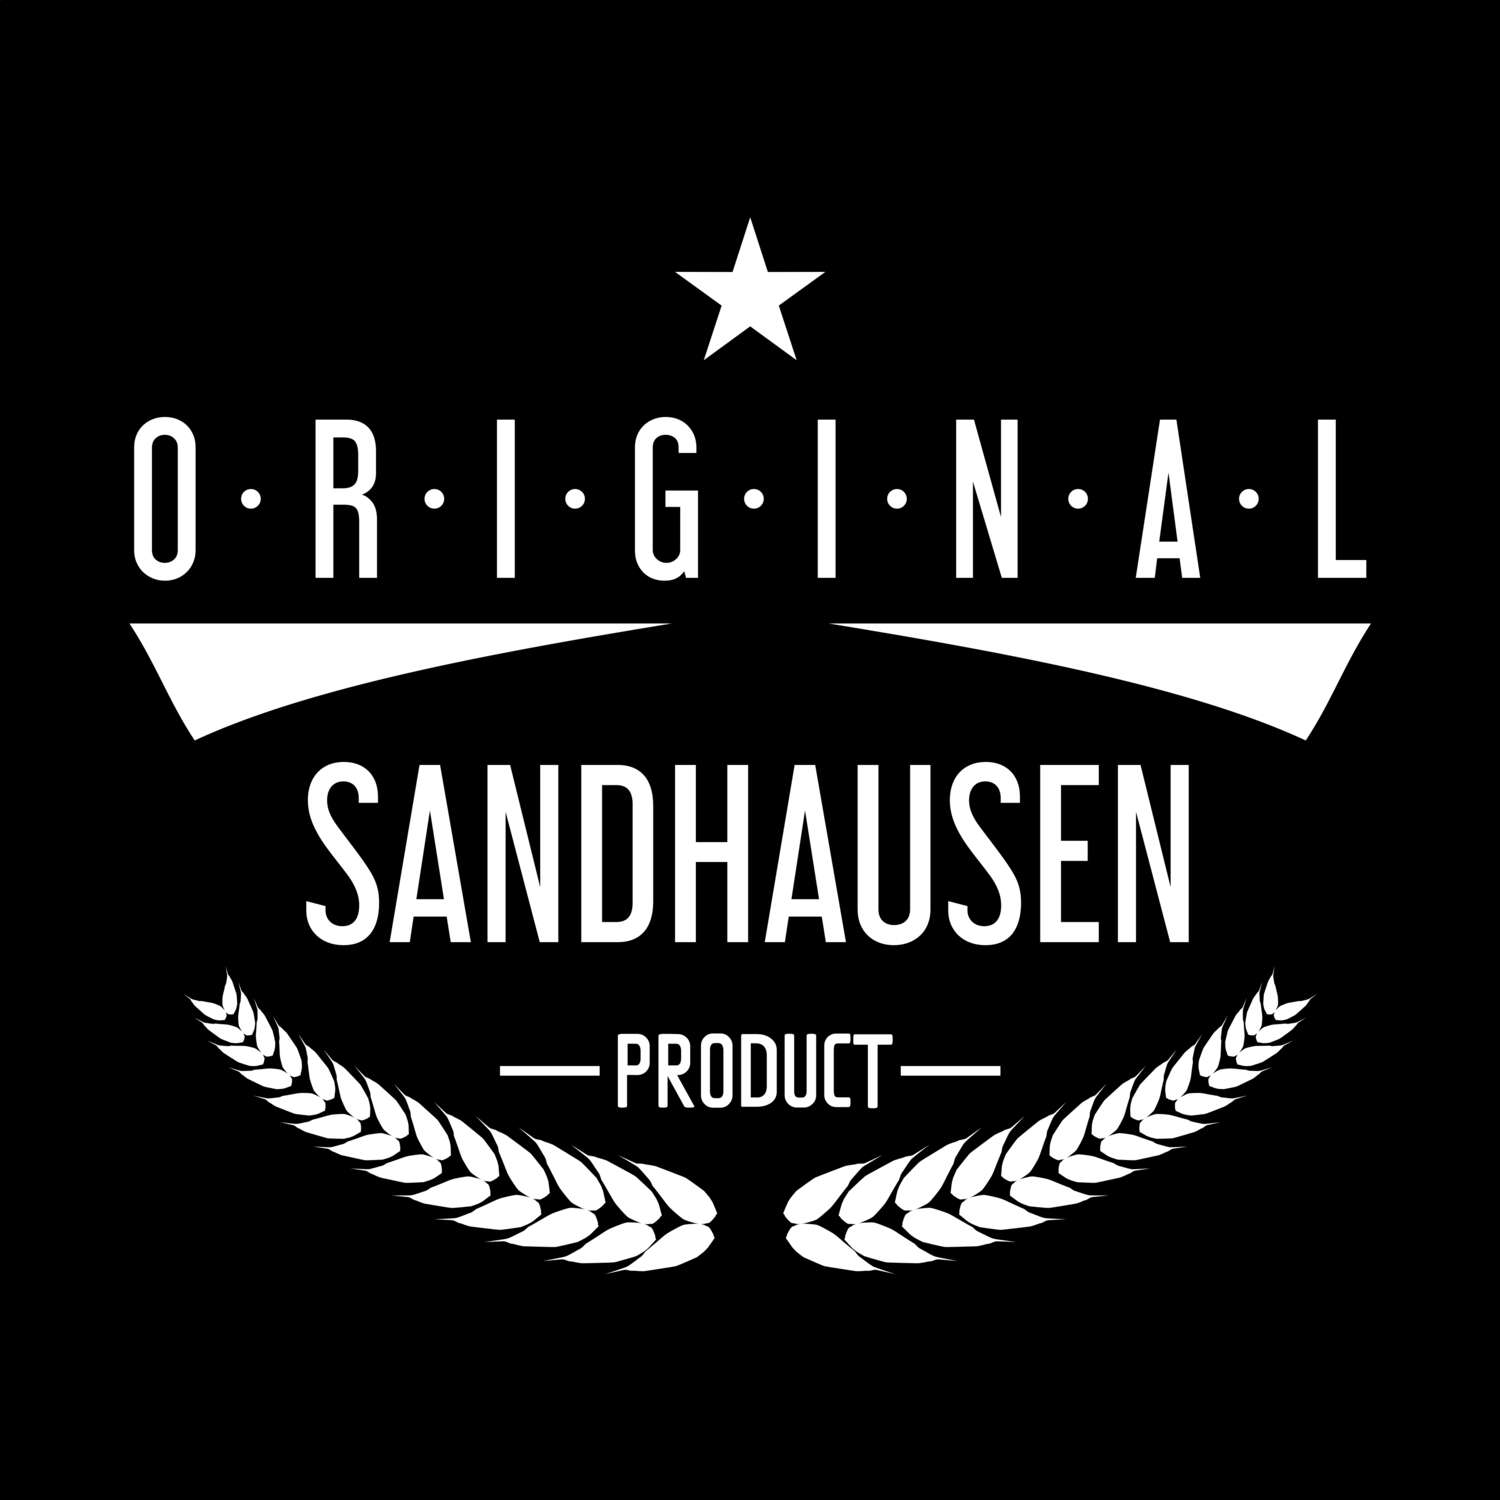 Sandhausen T-Shirt »Original Product«